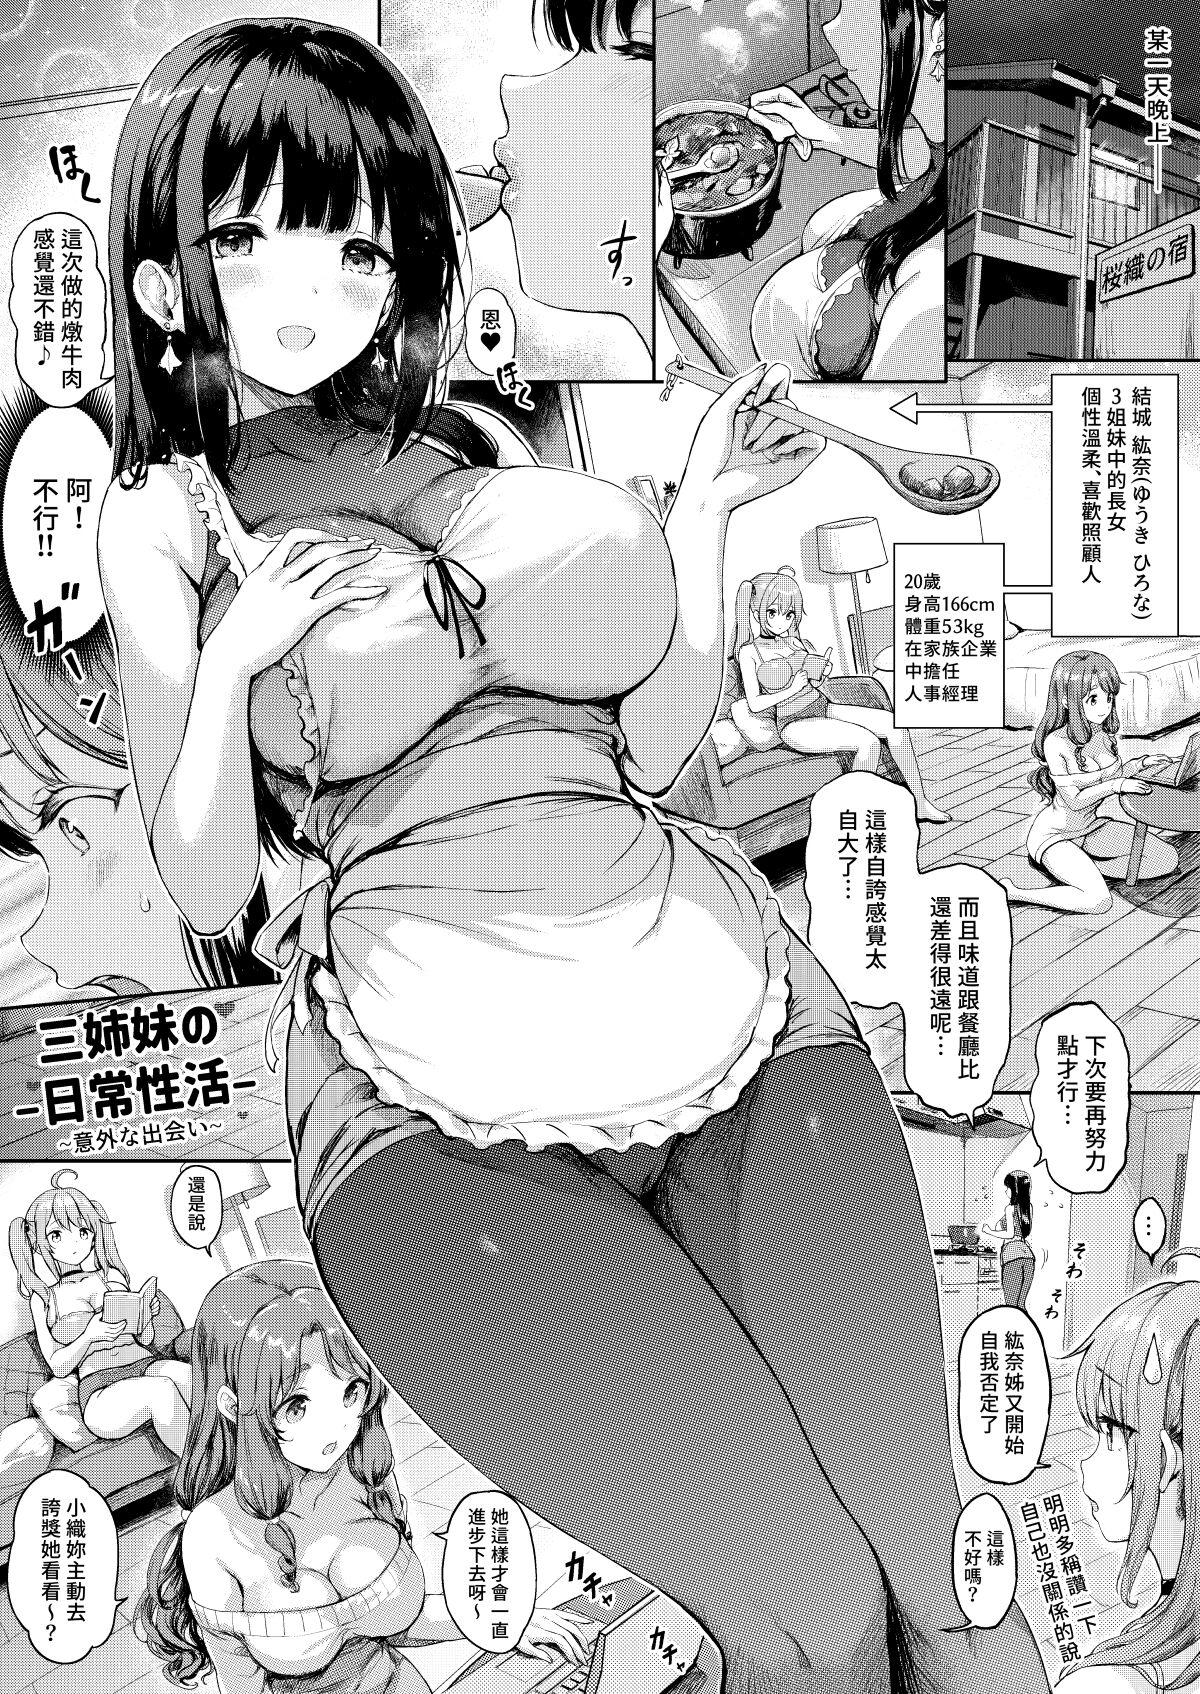 Assfingering Sanshimai Manga ep1 p1-9 - Original Cock Suck - Picture 1